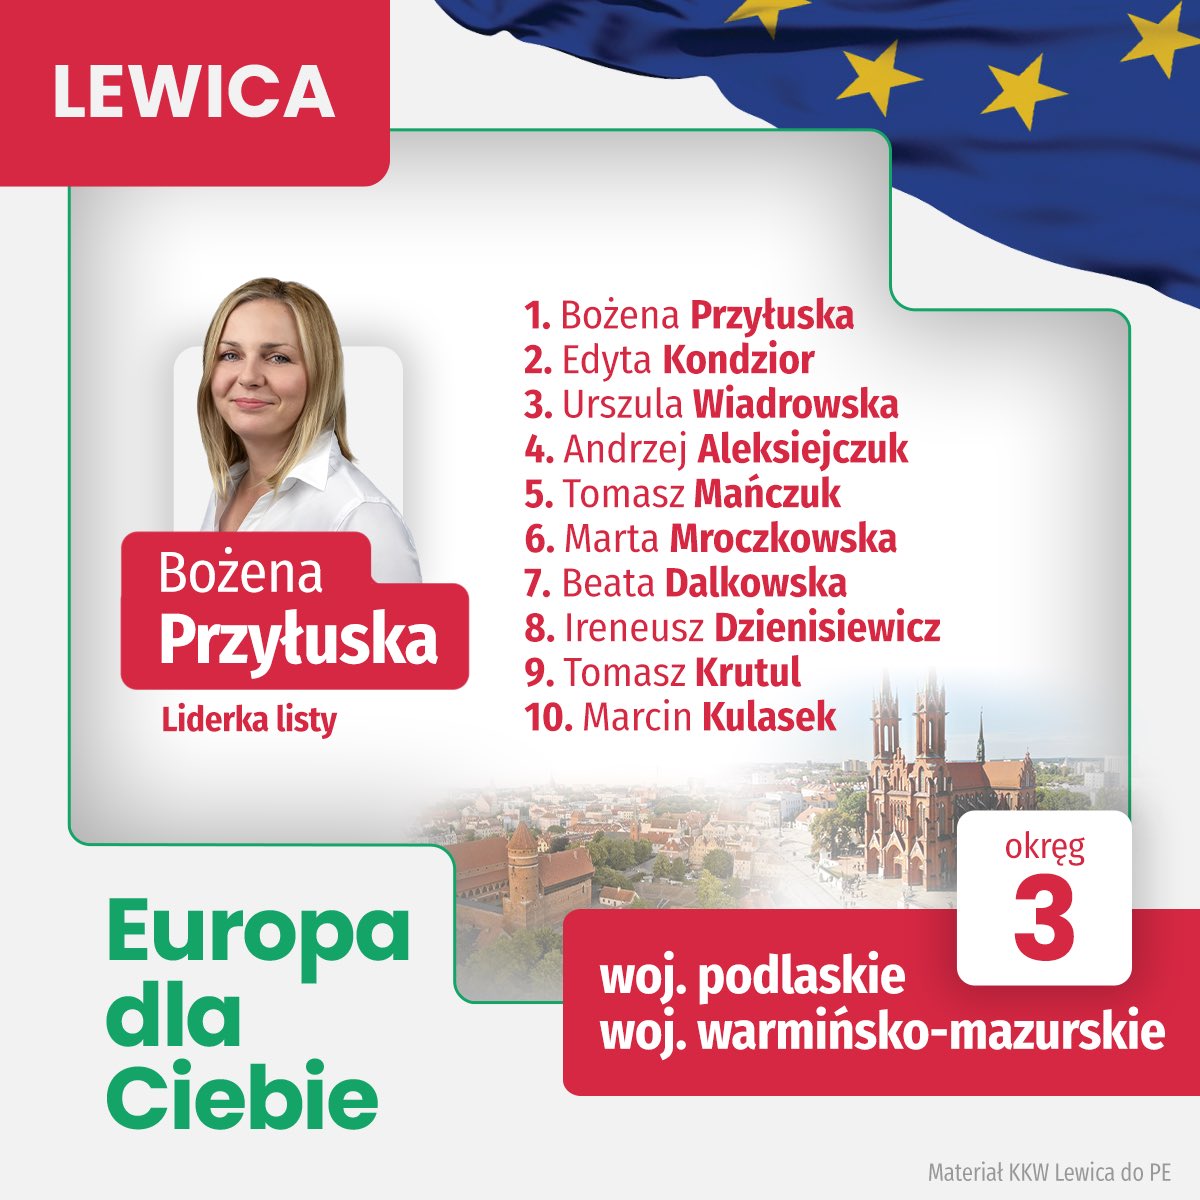 Oto nasza, podlasko-warmińsko-mazurska lista Lewica do Parlamentu Europejskiego! 🇵🇱🇪🇺 Poznajcie naszą drużynę! Liderką listy jest @BozenaPrzyluska, a na innych miejscach znajdziecie m.in. @UlaWiadrowska, czy @MarcinKulasek